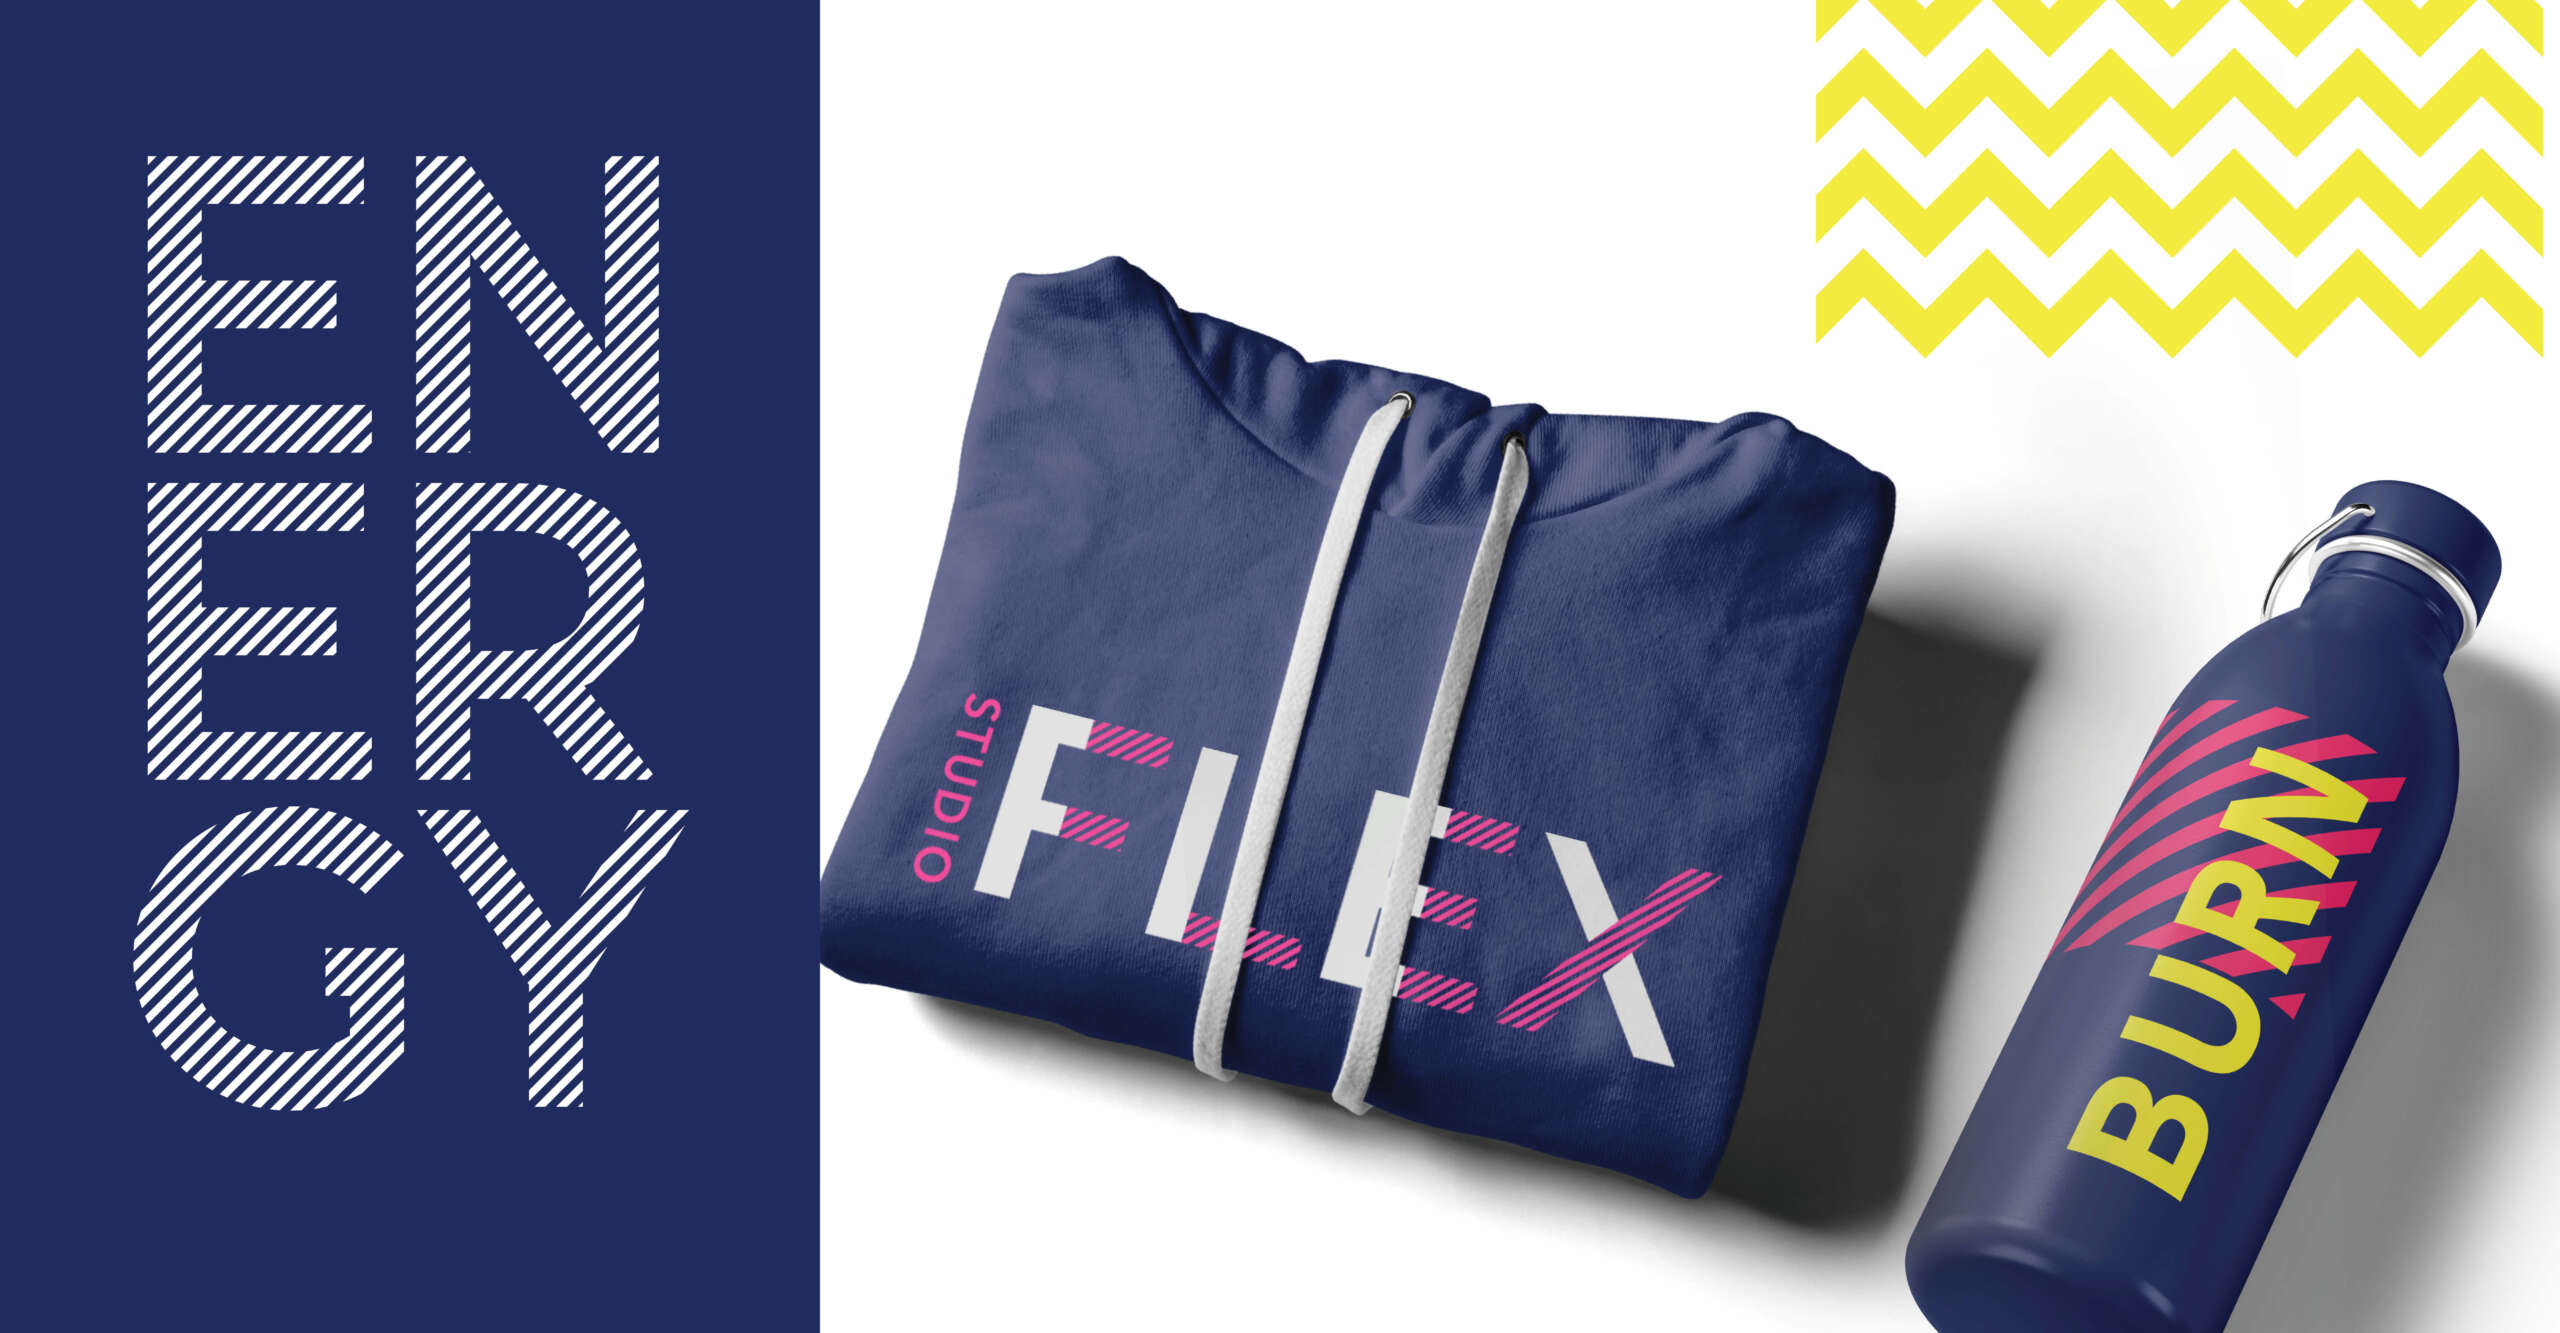 Studio Flex merchandise including hoodie and water bottle